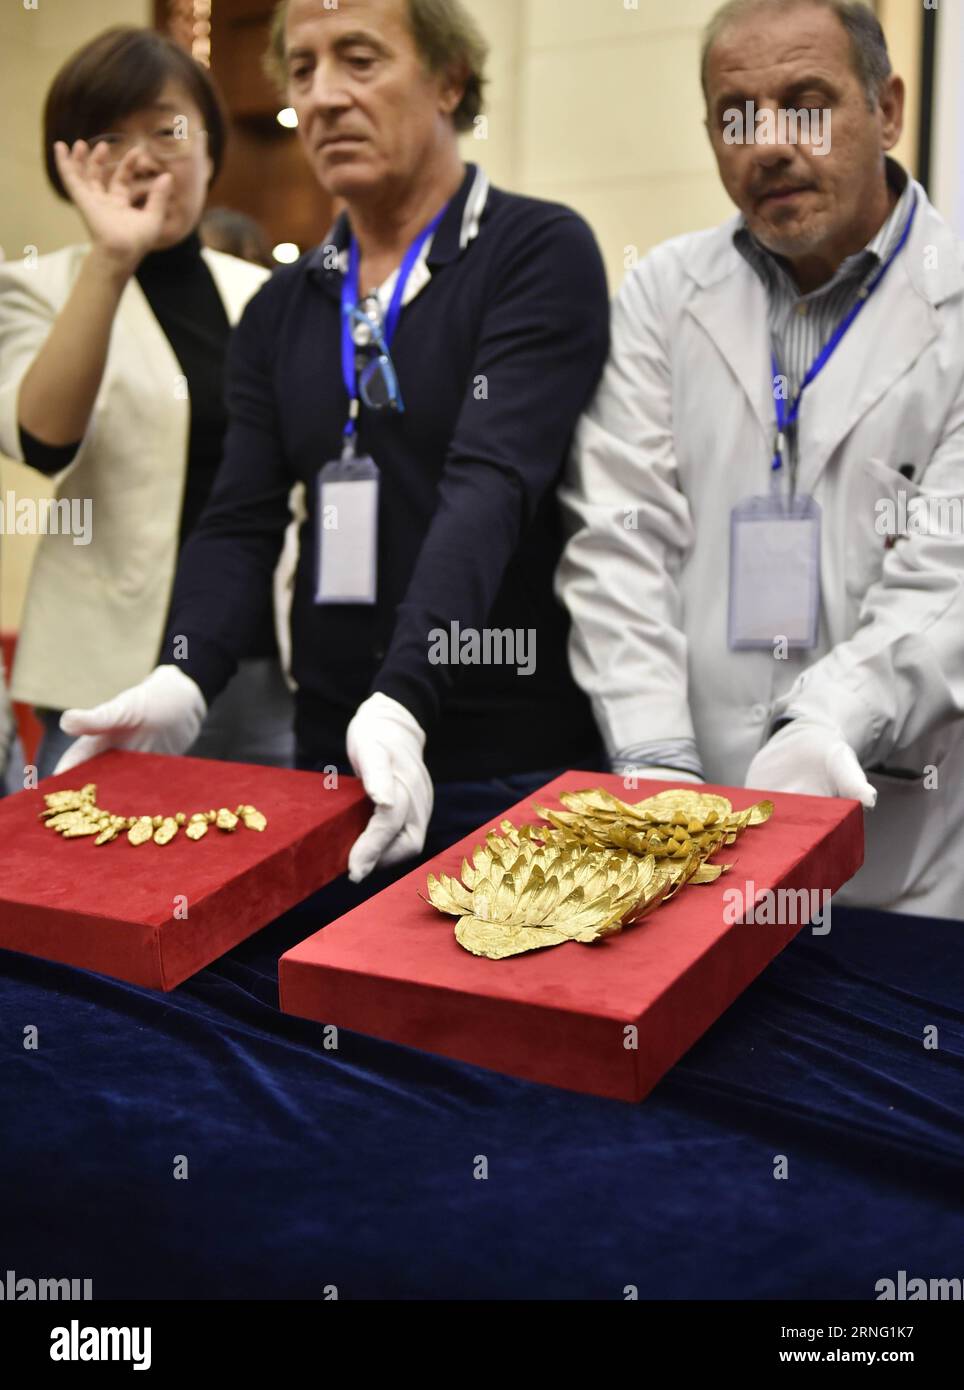 (160901) -- SHENYANG, 1 settembre 2016 -- i membri del personale mostrano antichi gioielli d'oro durante una cerimonia di disimballaggio a Shenyang, provincia di Liaoning, Cina nord-orientale, 1 settembre 2016. Diverse centinaia di reperti culturali dell'antica civiltà mediterranea del Museo Italiano Casa dei Carraresi saranno esposti nel Museo Provinciale Liaoning dal 6 settembre. ) (wx) CHINA-SHENYANG-MUSEUM-MEDITERRANEAN-CIVILIZATION-EXHIBITION (CN) YaoxJianfeng PUBLICATIONxNOTxINxCHN 160901 Shenyang Sept 1 2016 membri dello staff mostrano antichi gioielli d'oro durante la cerimonia di disimballaggio a Shenyang nel nord-est della Cina Foto Stock